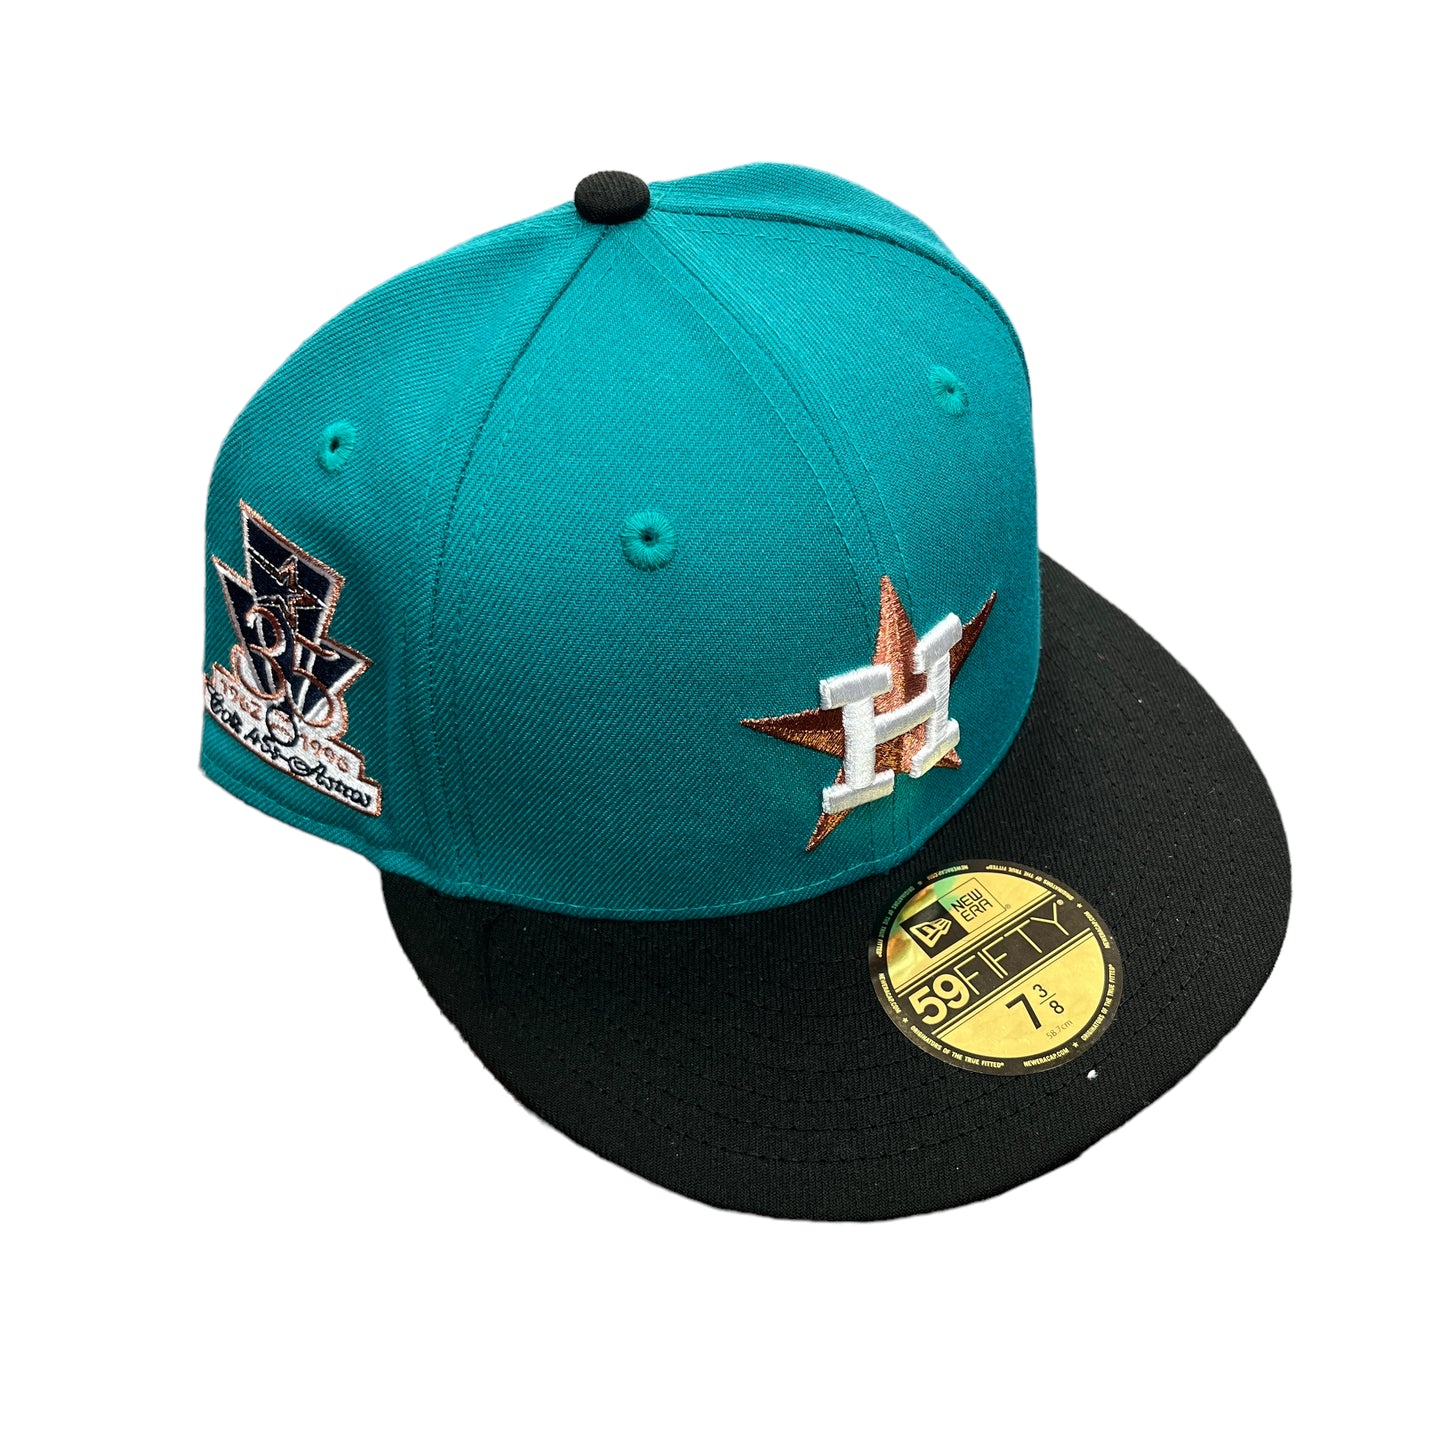 Astros Teal/Black Hat